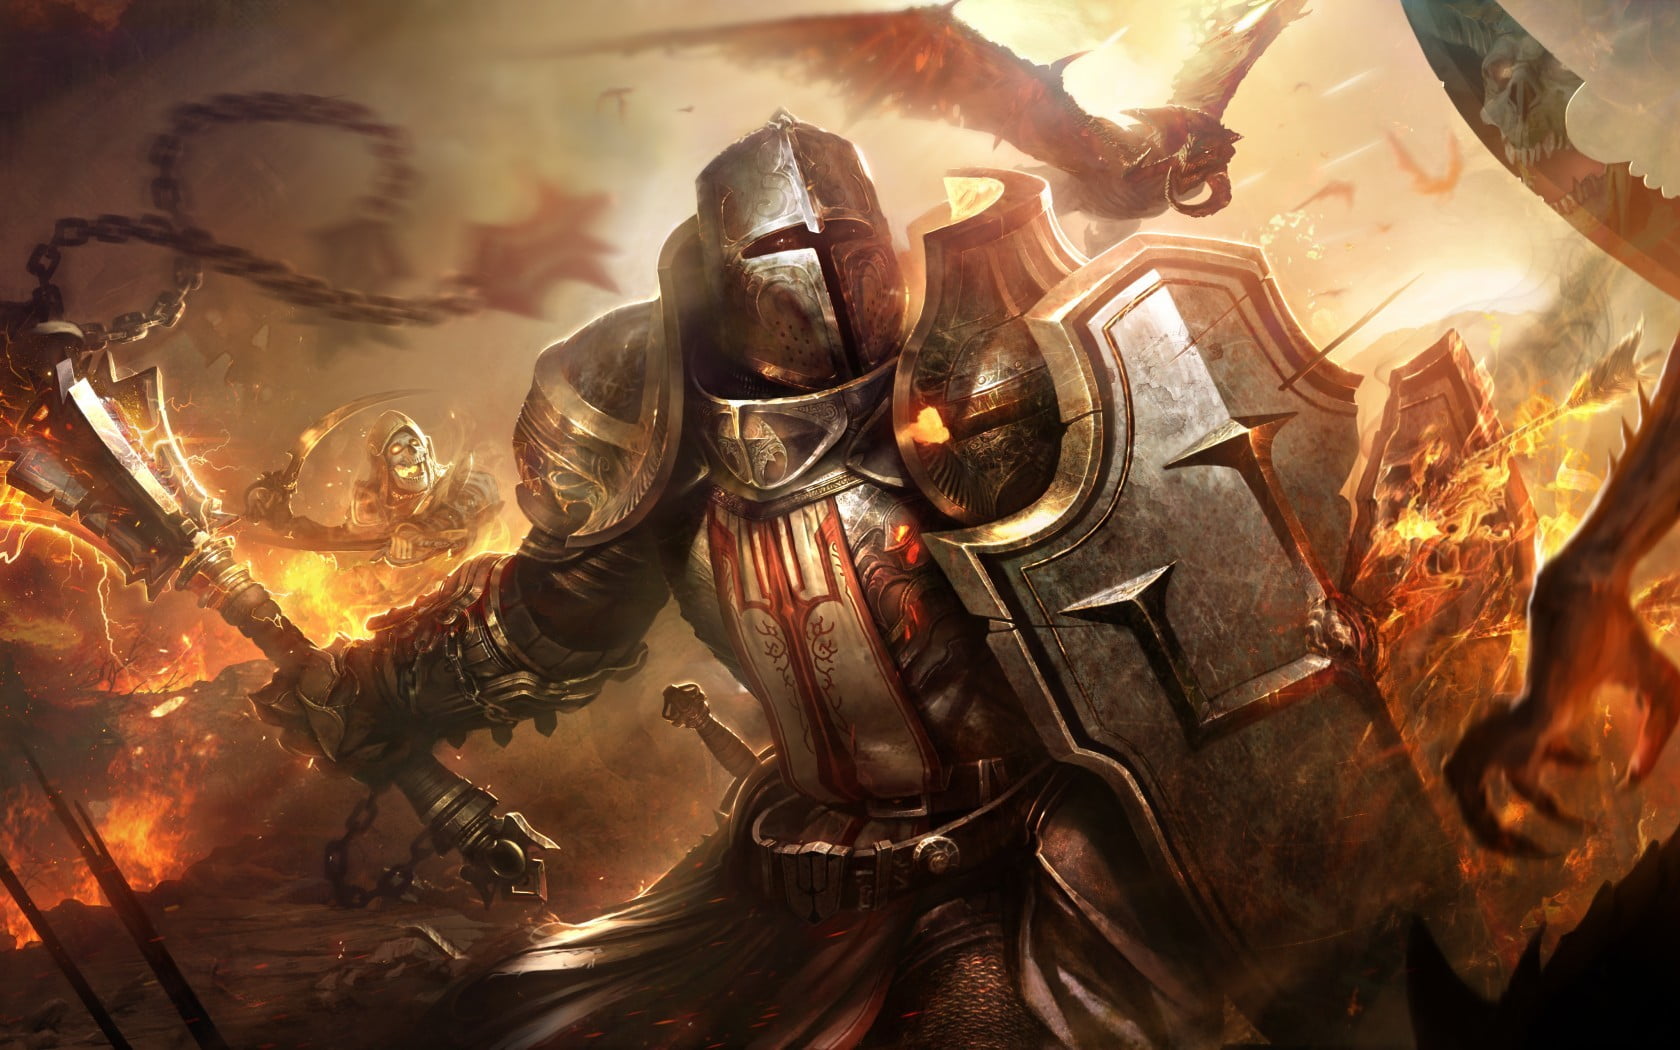 male wearing grey armor wallpaper, Diablo III, Diablo, video games, fantasy art